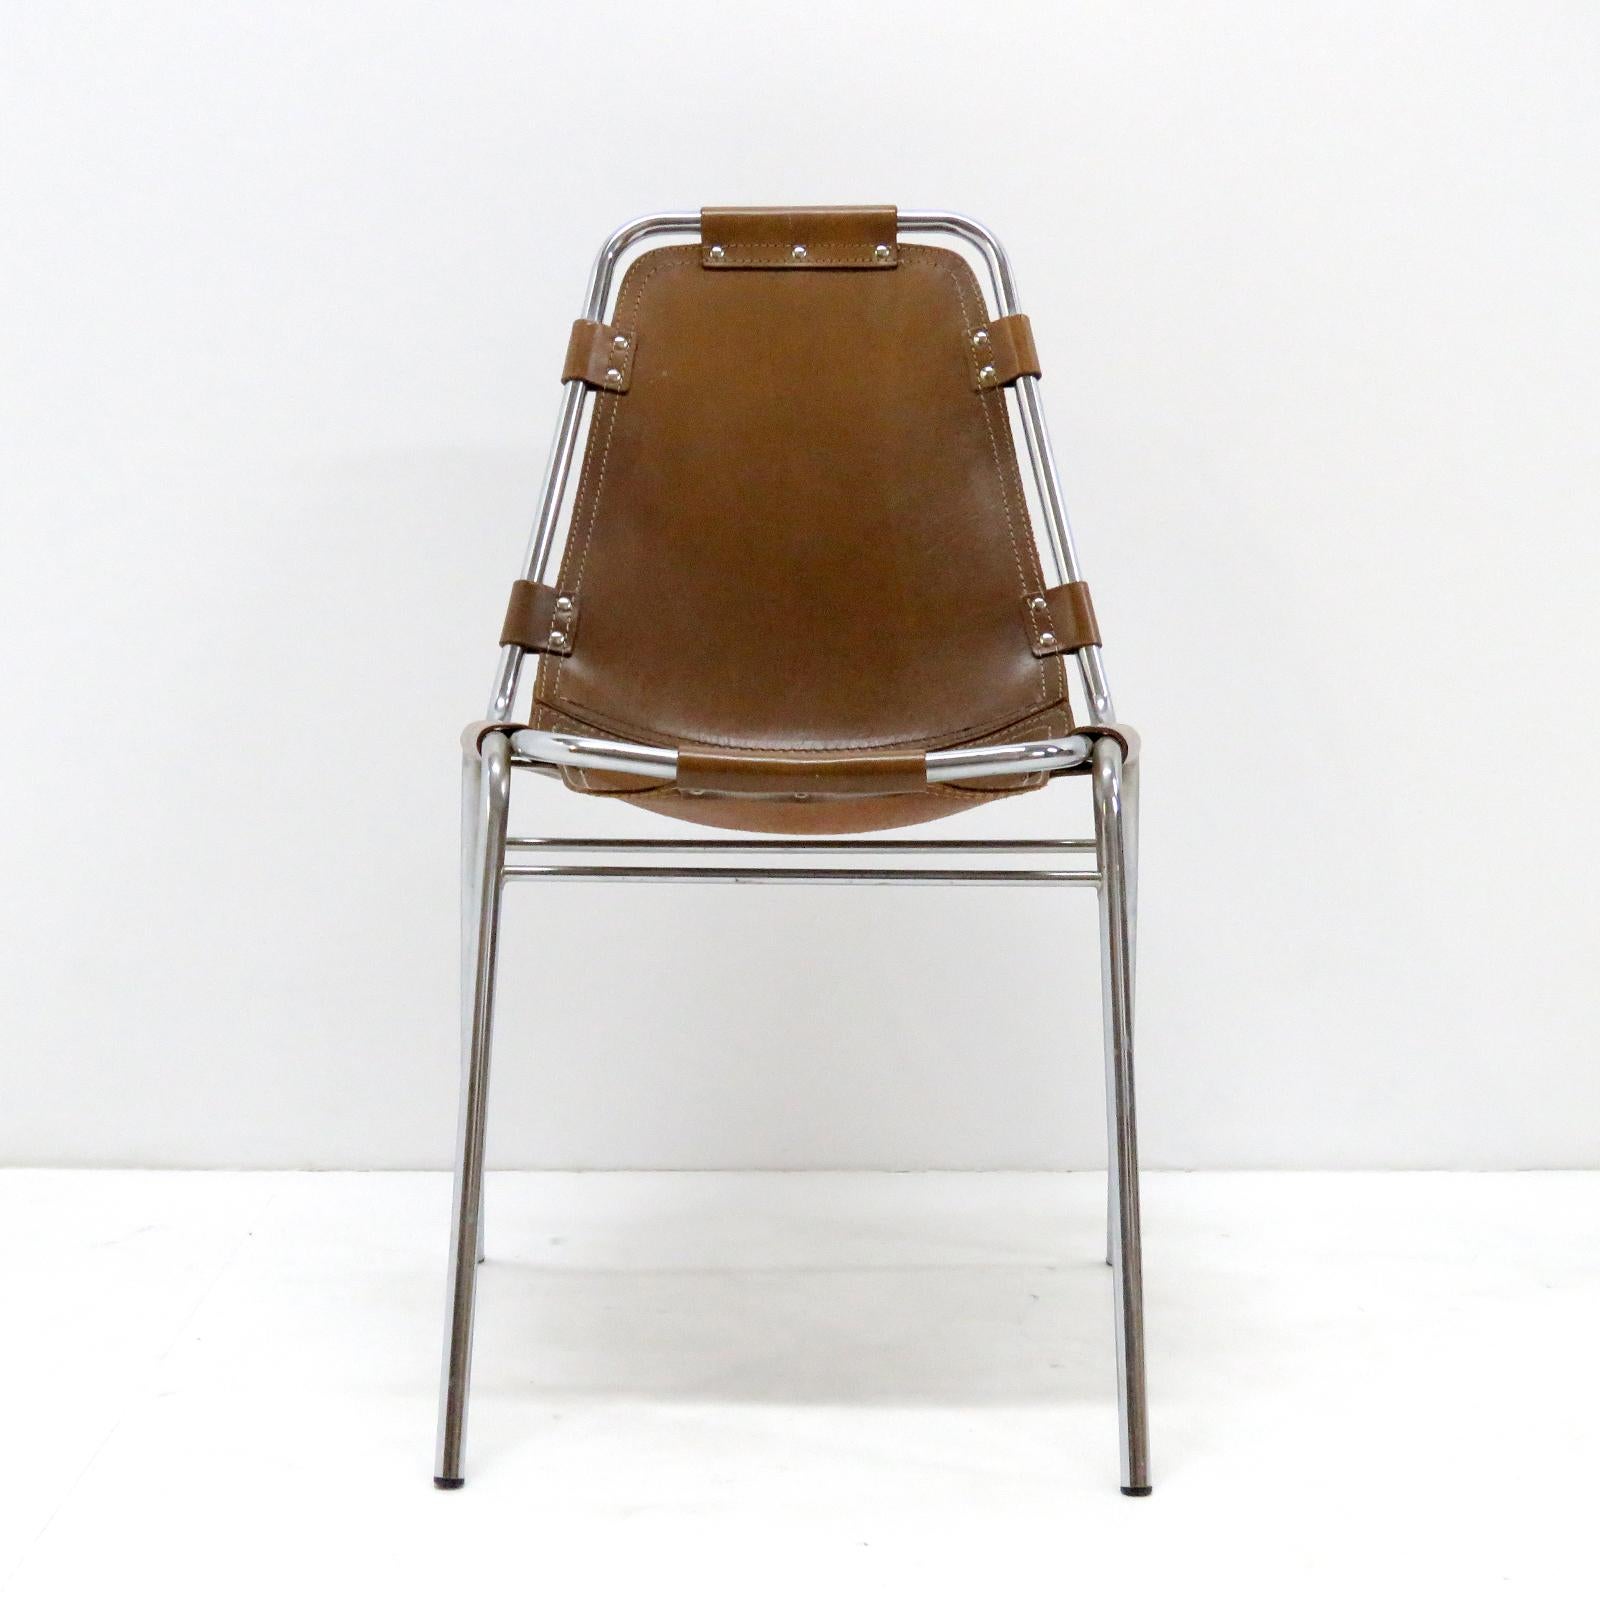 Ikonischer Beistellstuhl aus Leder und Metall, der 1960 von Charlotte Perriand für das Skigebiet Les Arcs ausgewählt wurde. Das verchromte Rohrgestell ist in hervorragendem Zustand und der Sitz aus hochwertigem, dickem Leder mit einer fantastischen